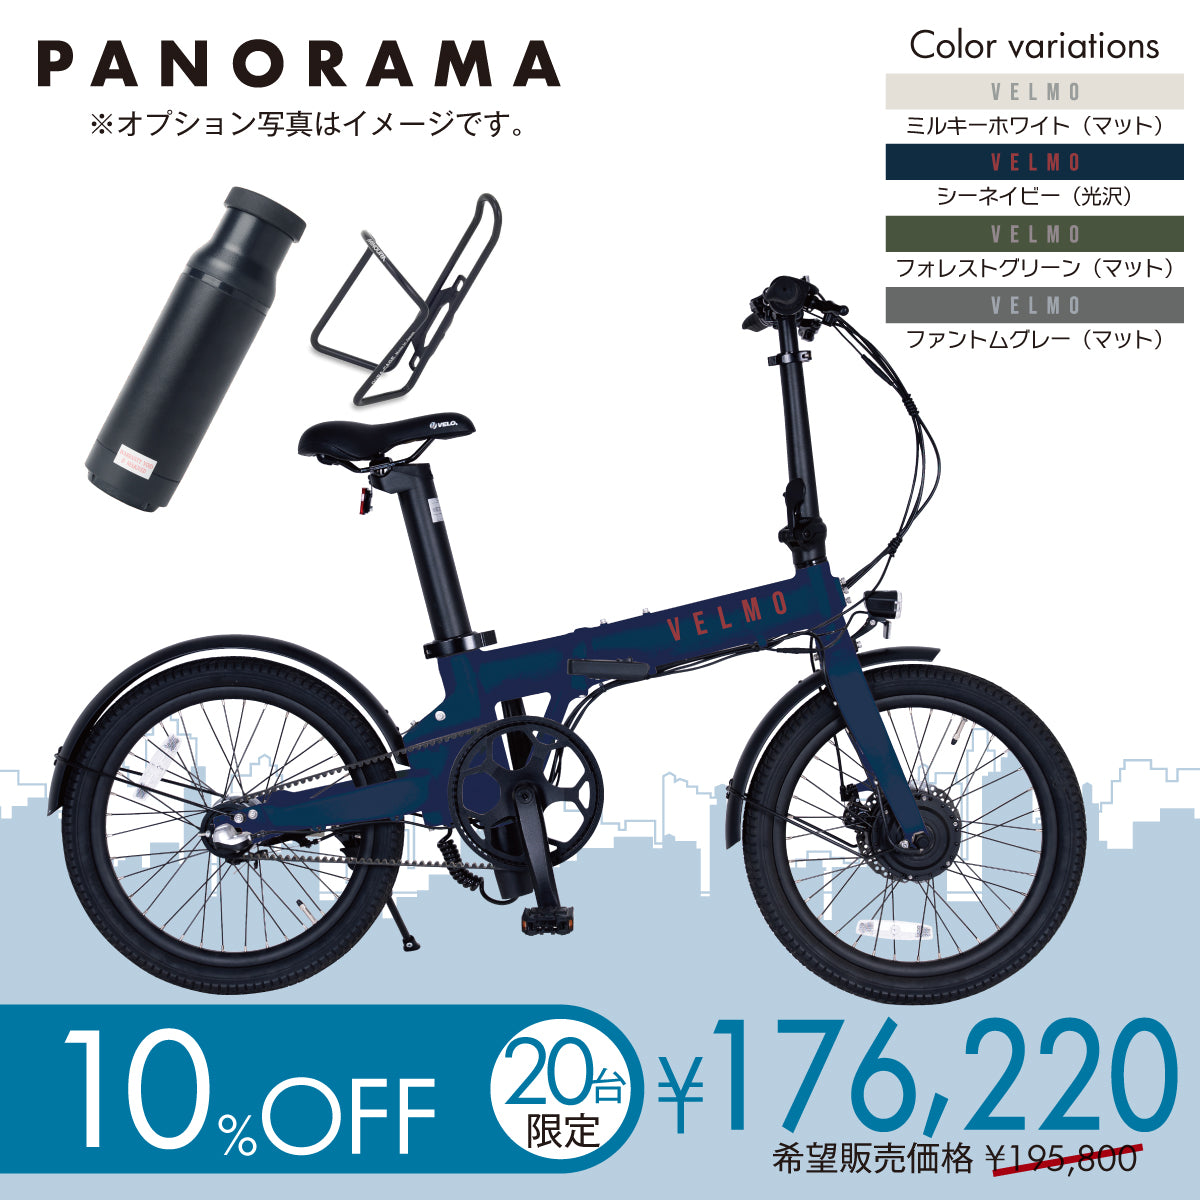 【20台限定】PANORAMA  充電の心配いらないパック 10%OFF